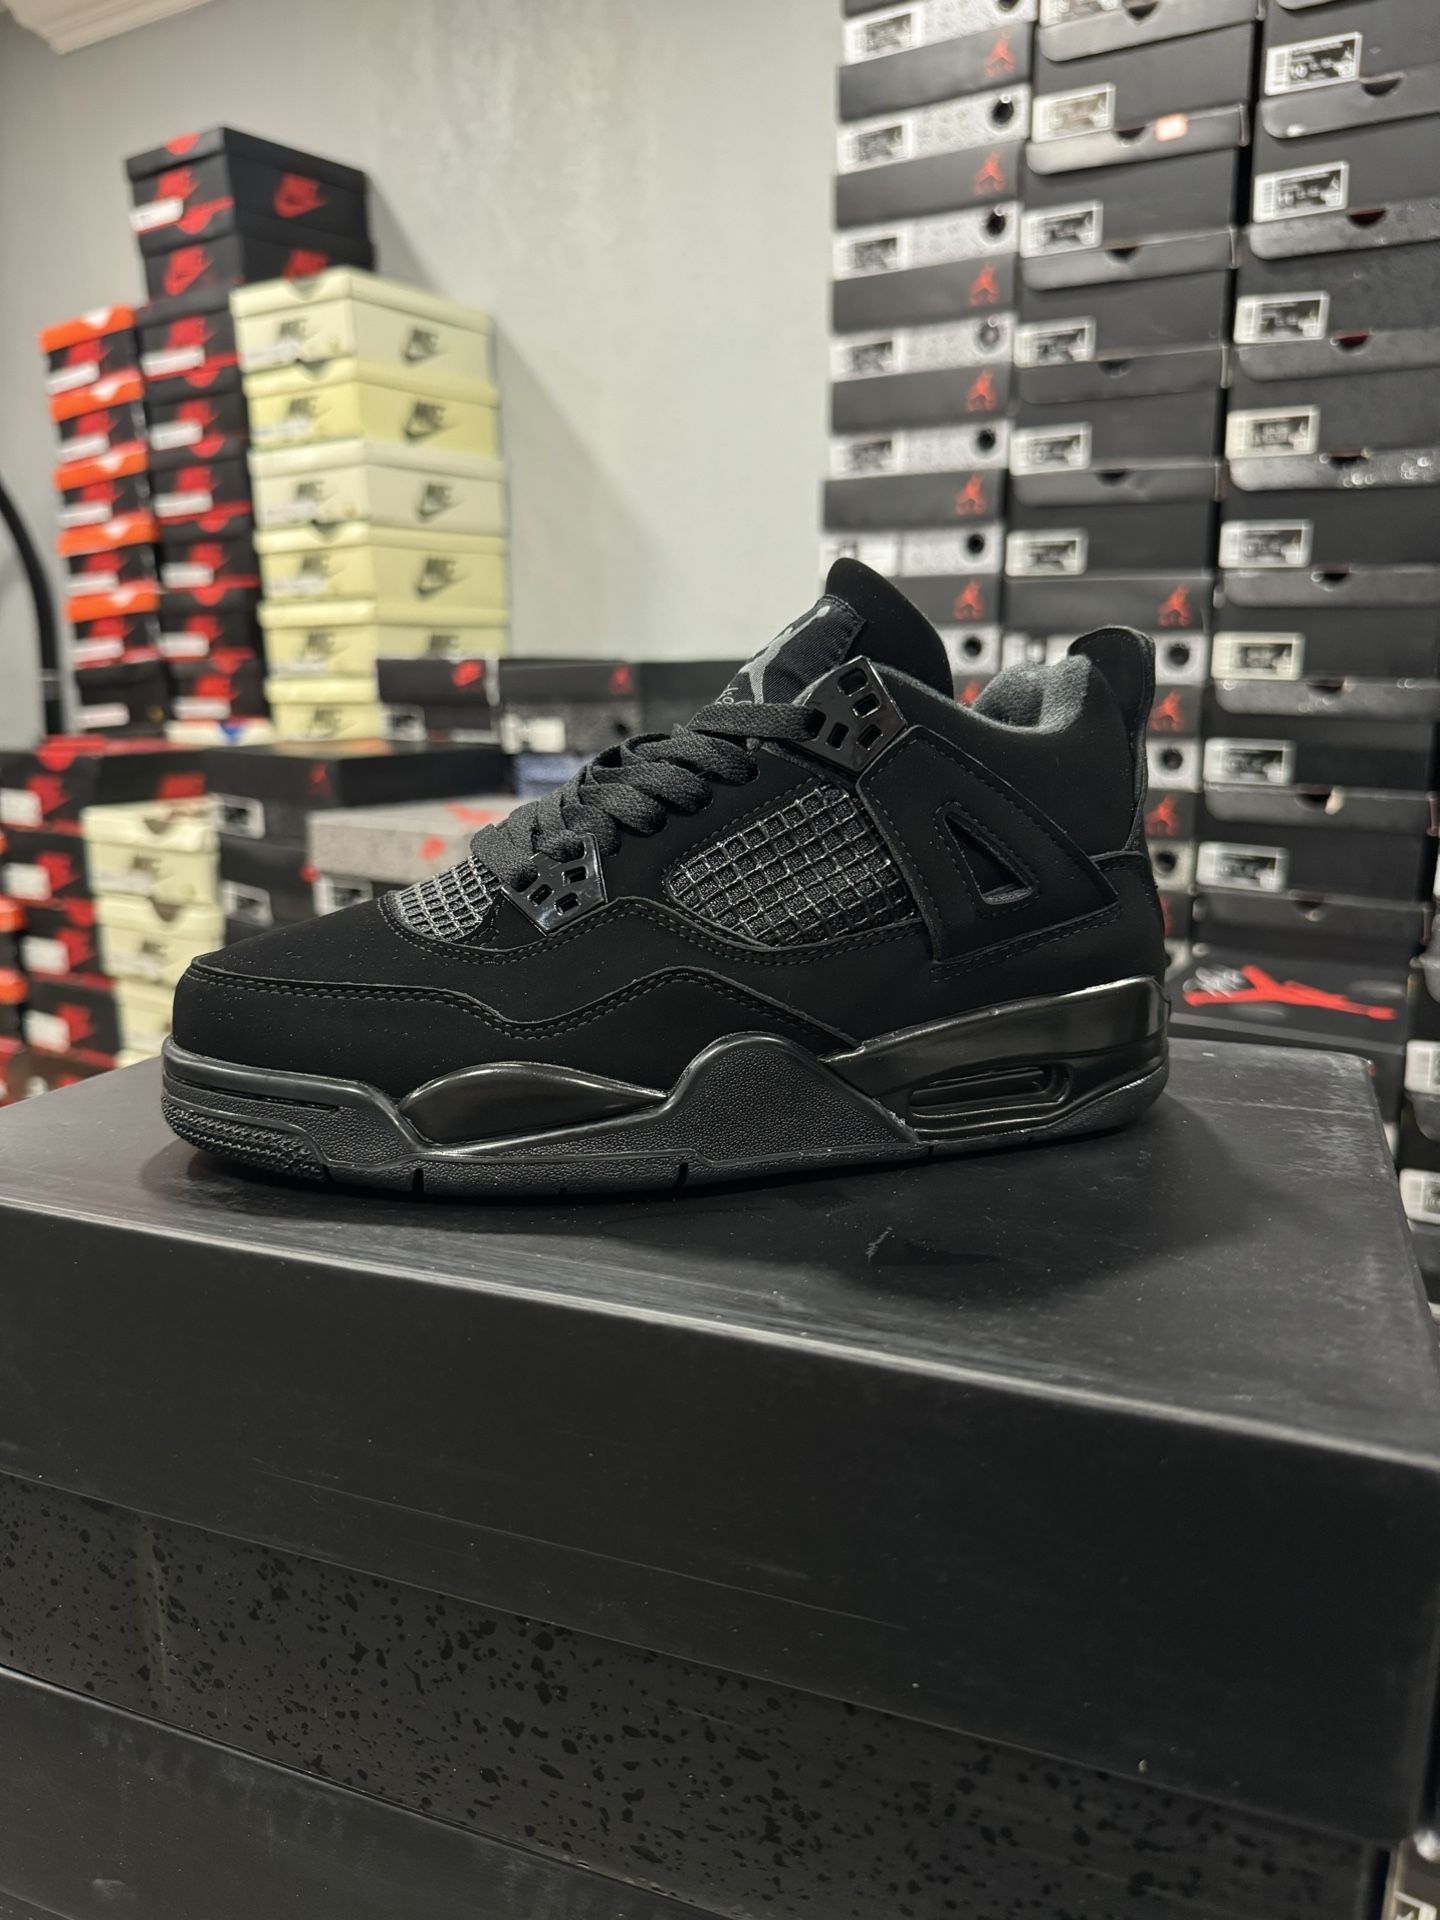 Air Jordan 4’s “ Black Cats "